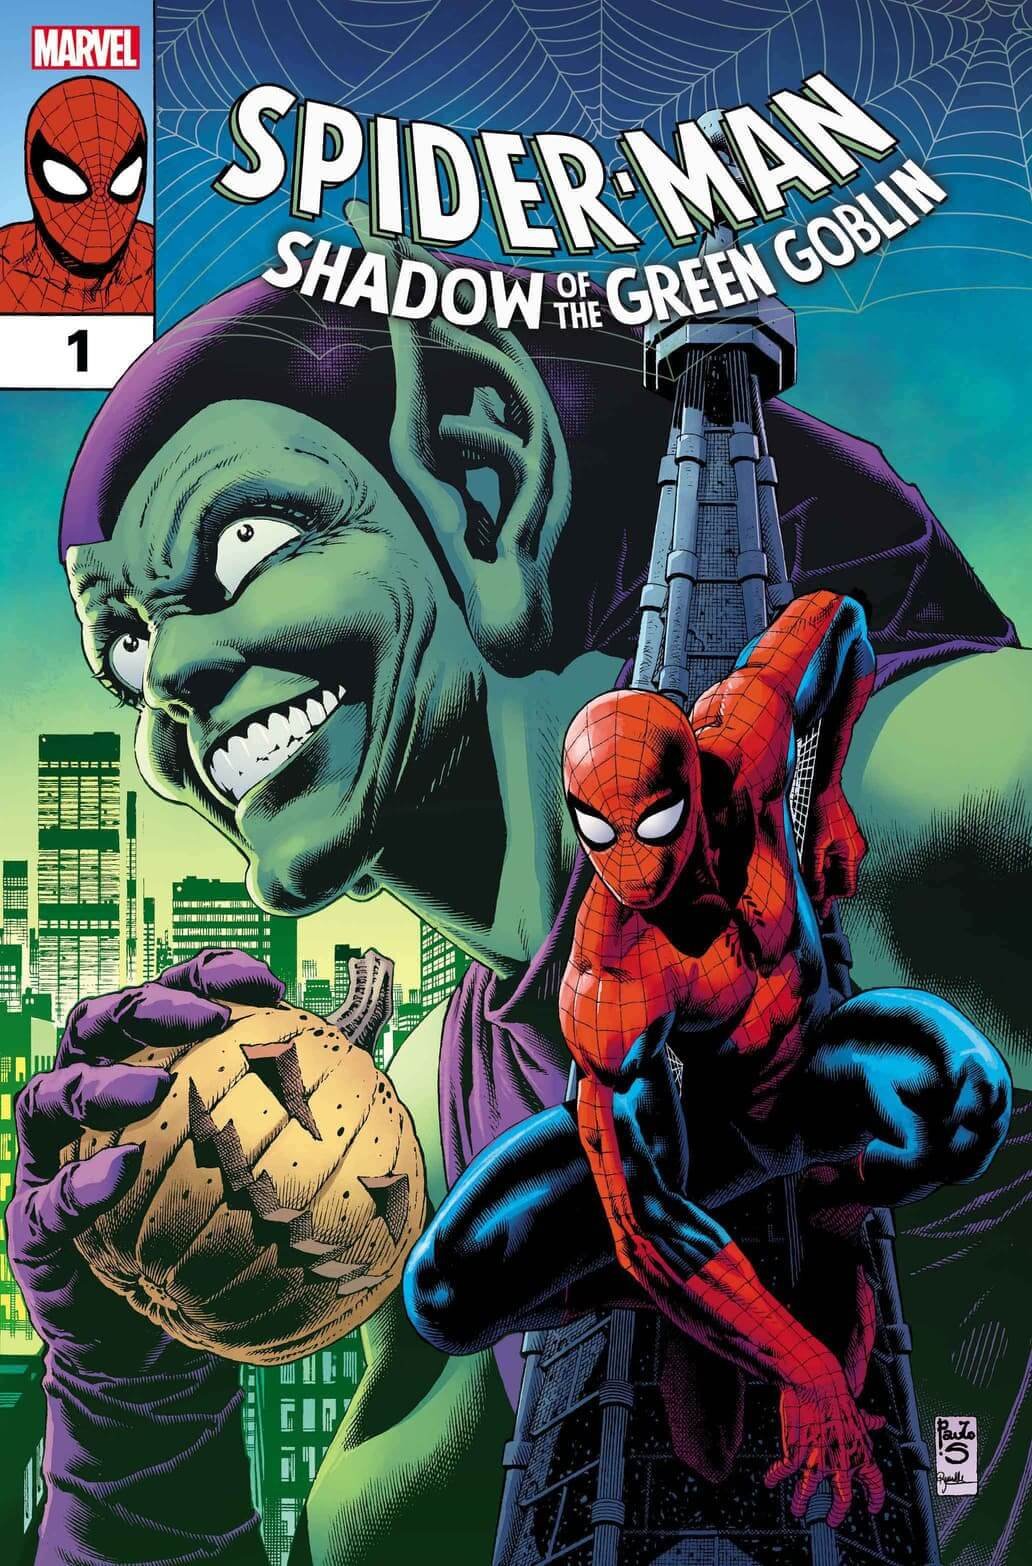 Cover di Spider-Man: Shadow of the Green Goblin 1 di Paulo Siqueira, la nuova miniserie di DeMatteis